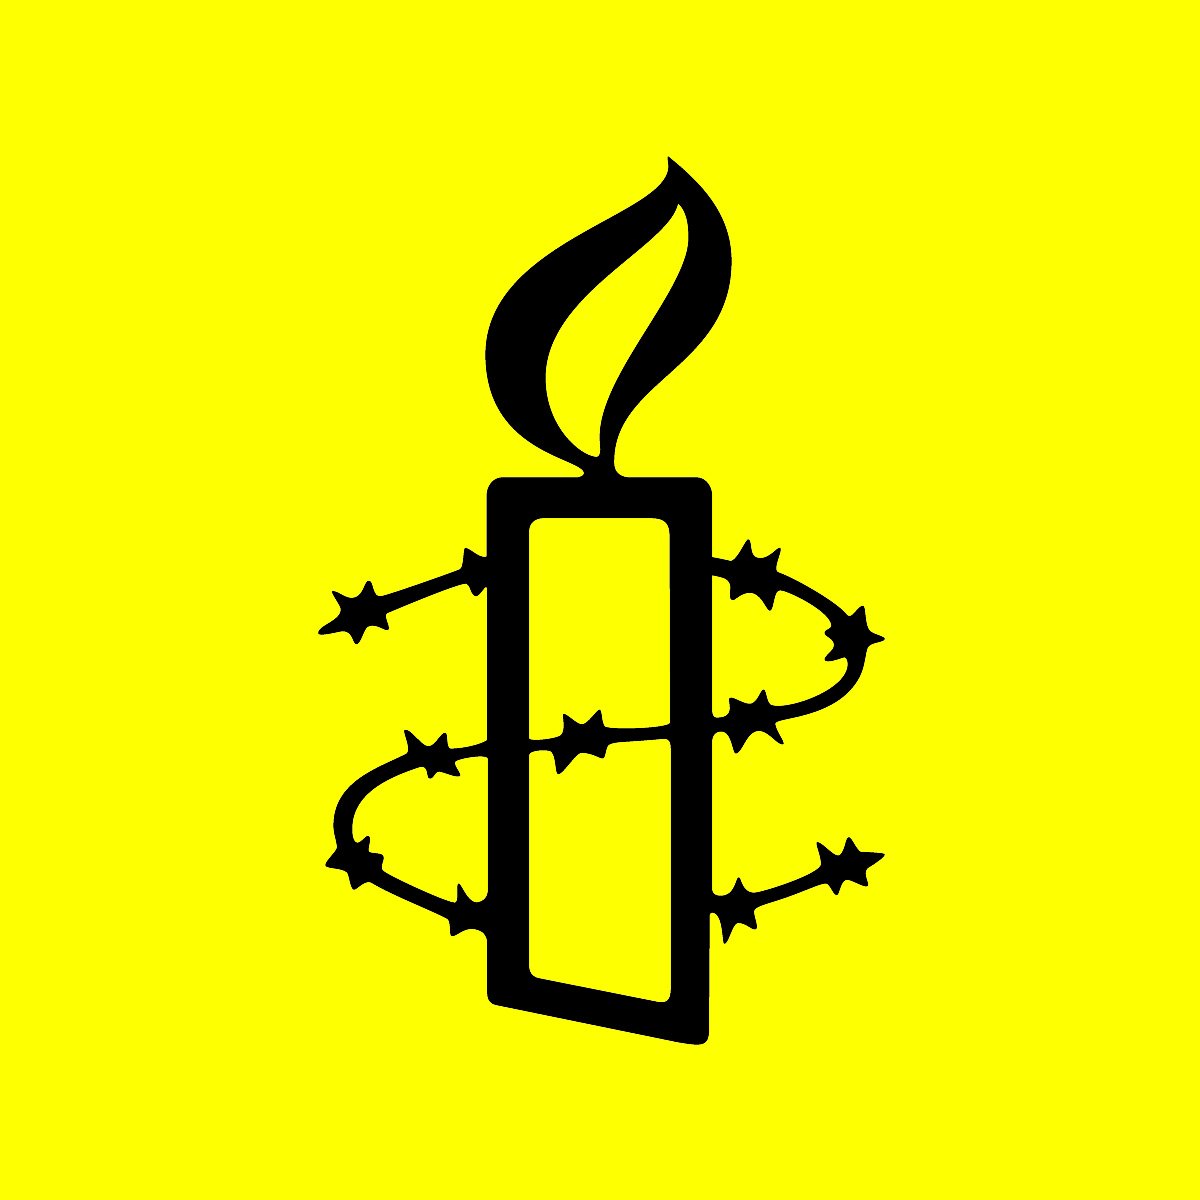 Allau de crítiques a Amnistia Internacional per la tèbia resposta als empresonaments